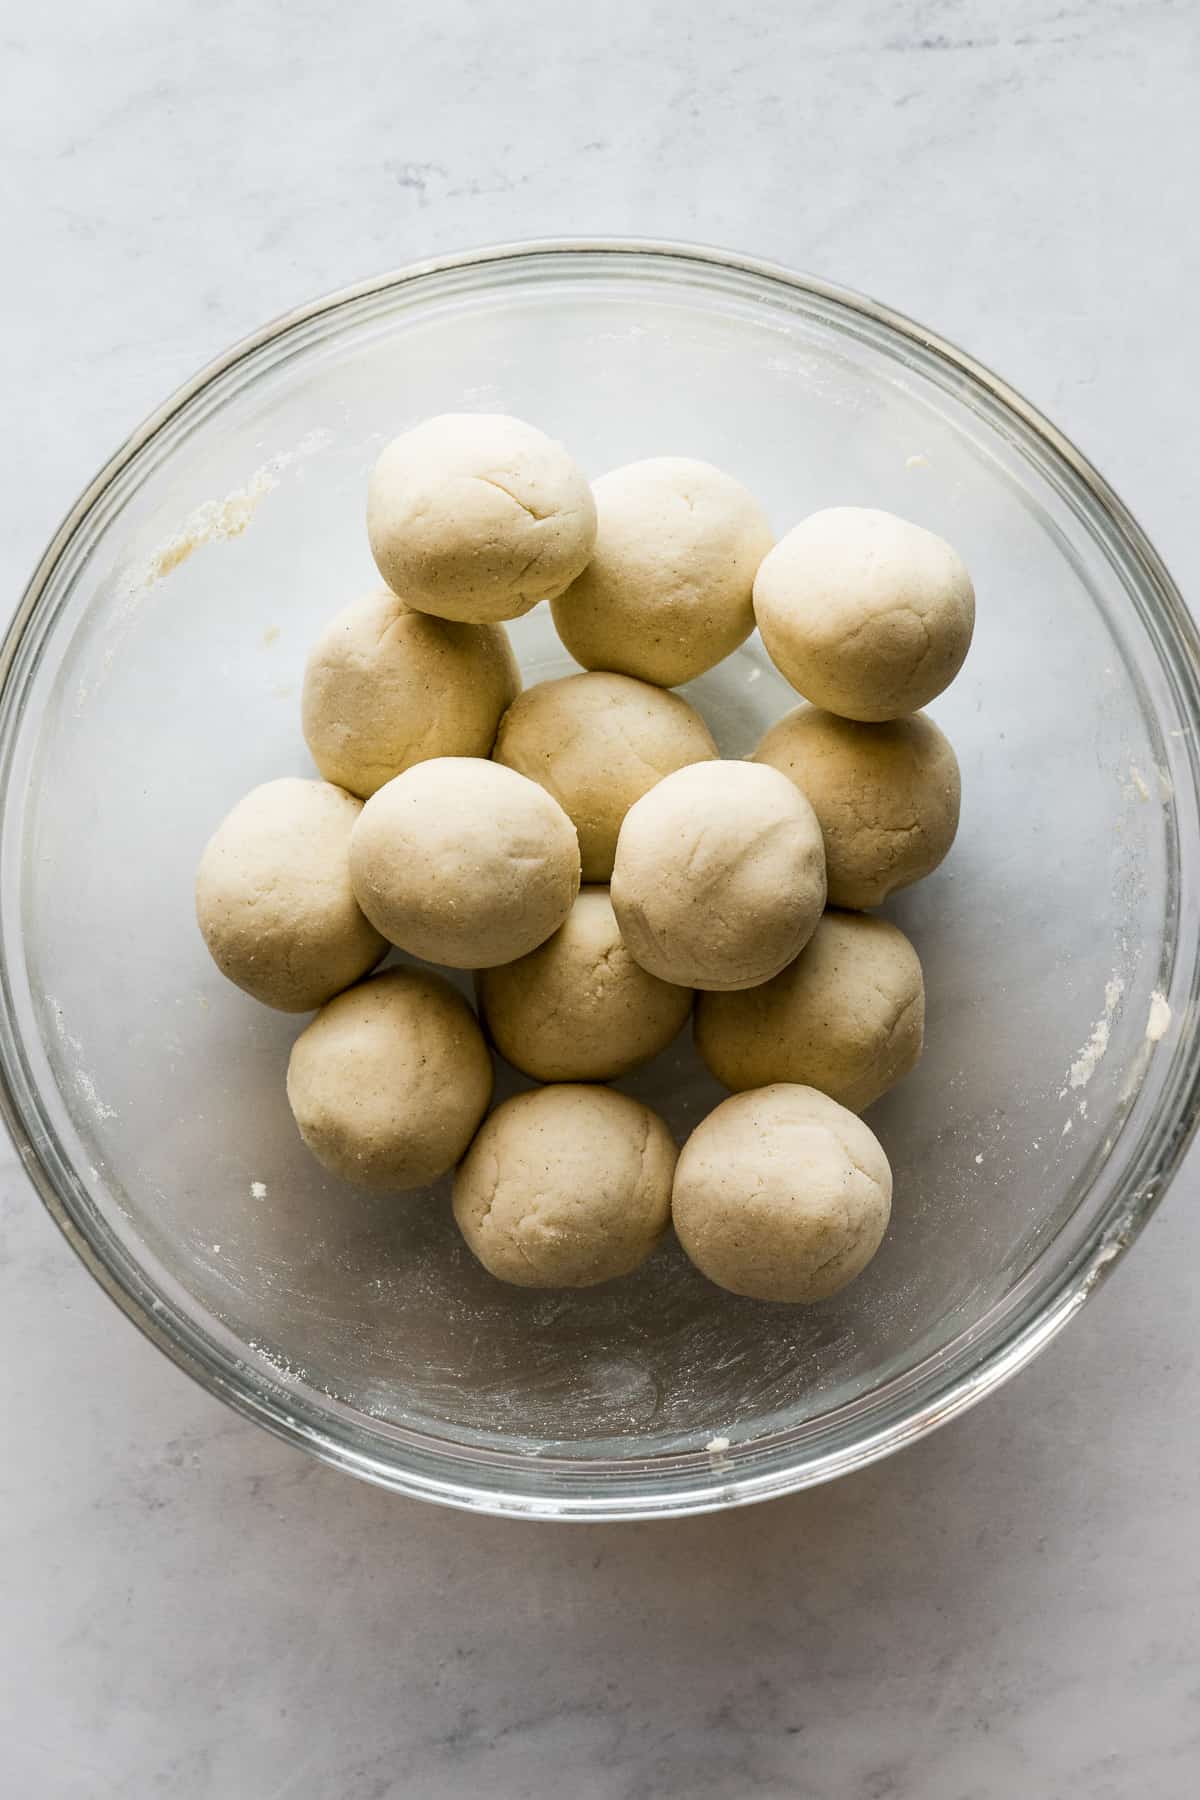 Balls of masa harina in a bowl.